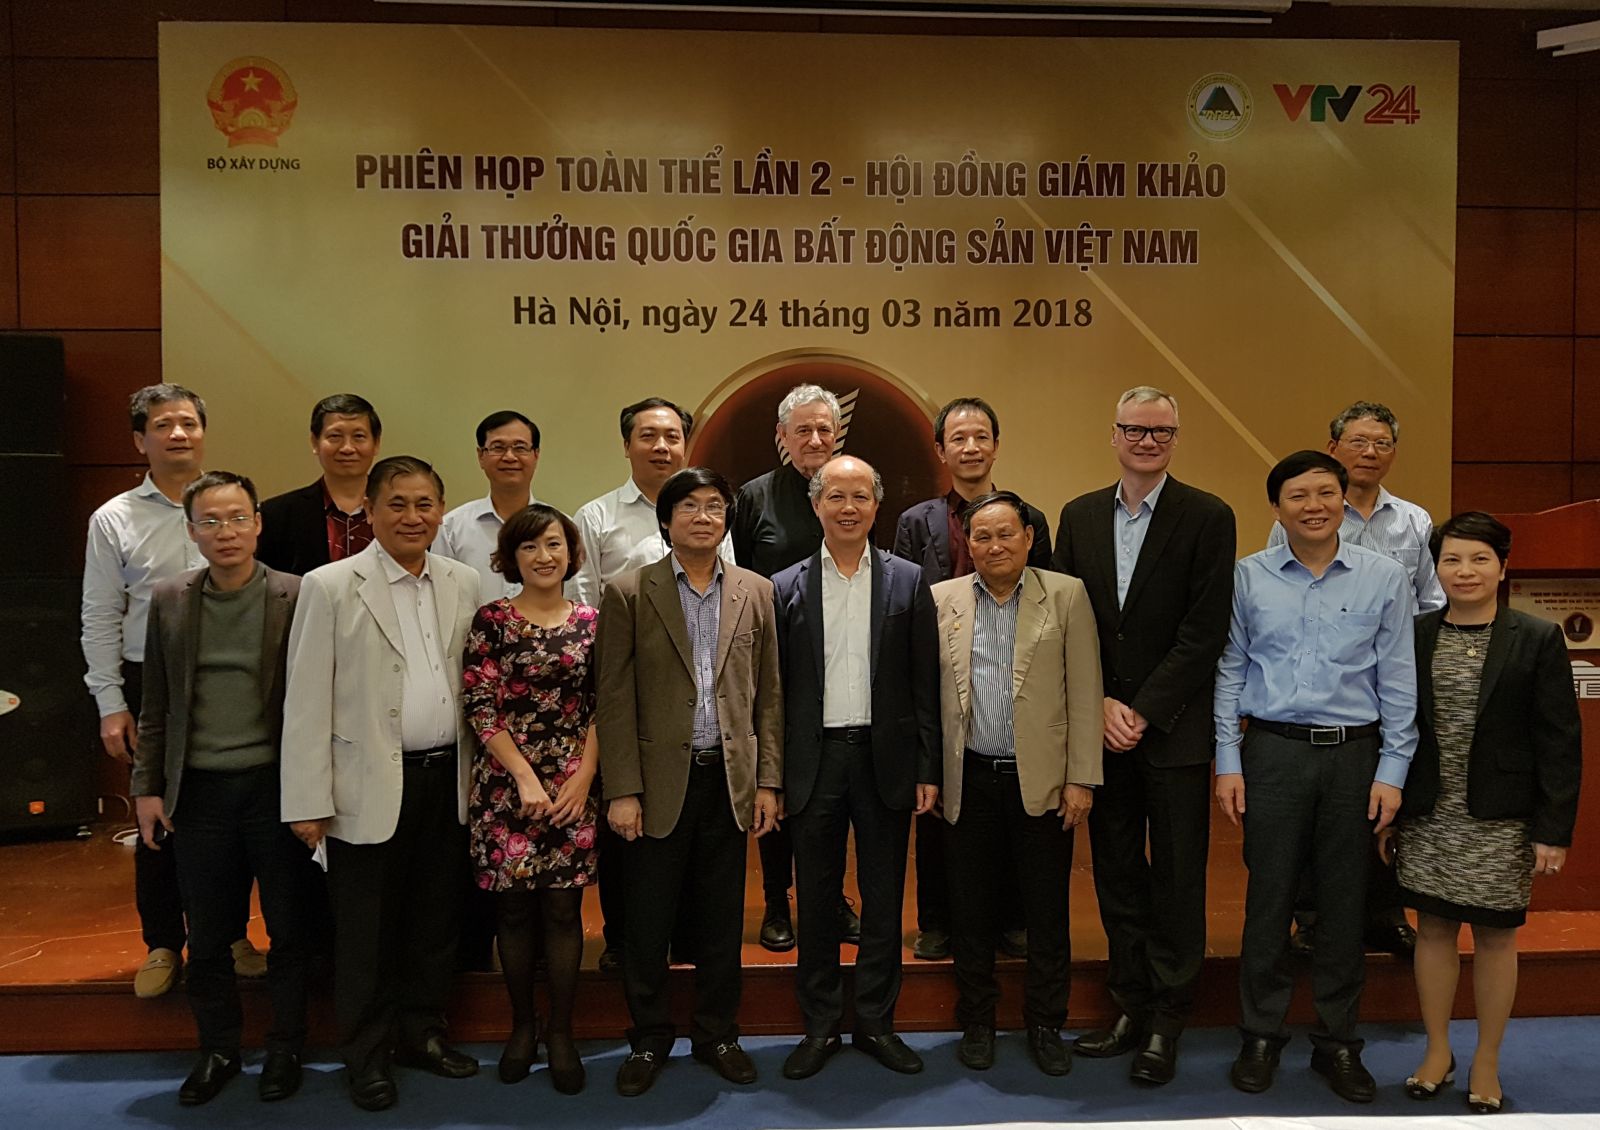 Hội đồng Giám khảo và Ban Tổ chức Giải thưởng Quốc gia Bất động sản Việt Nam.